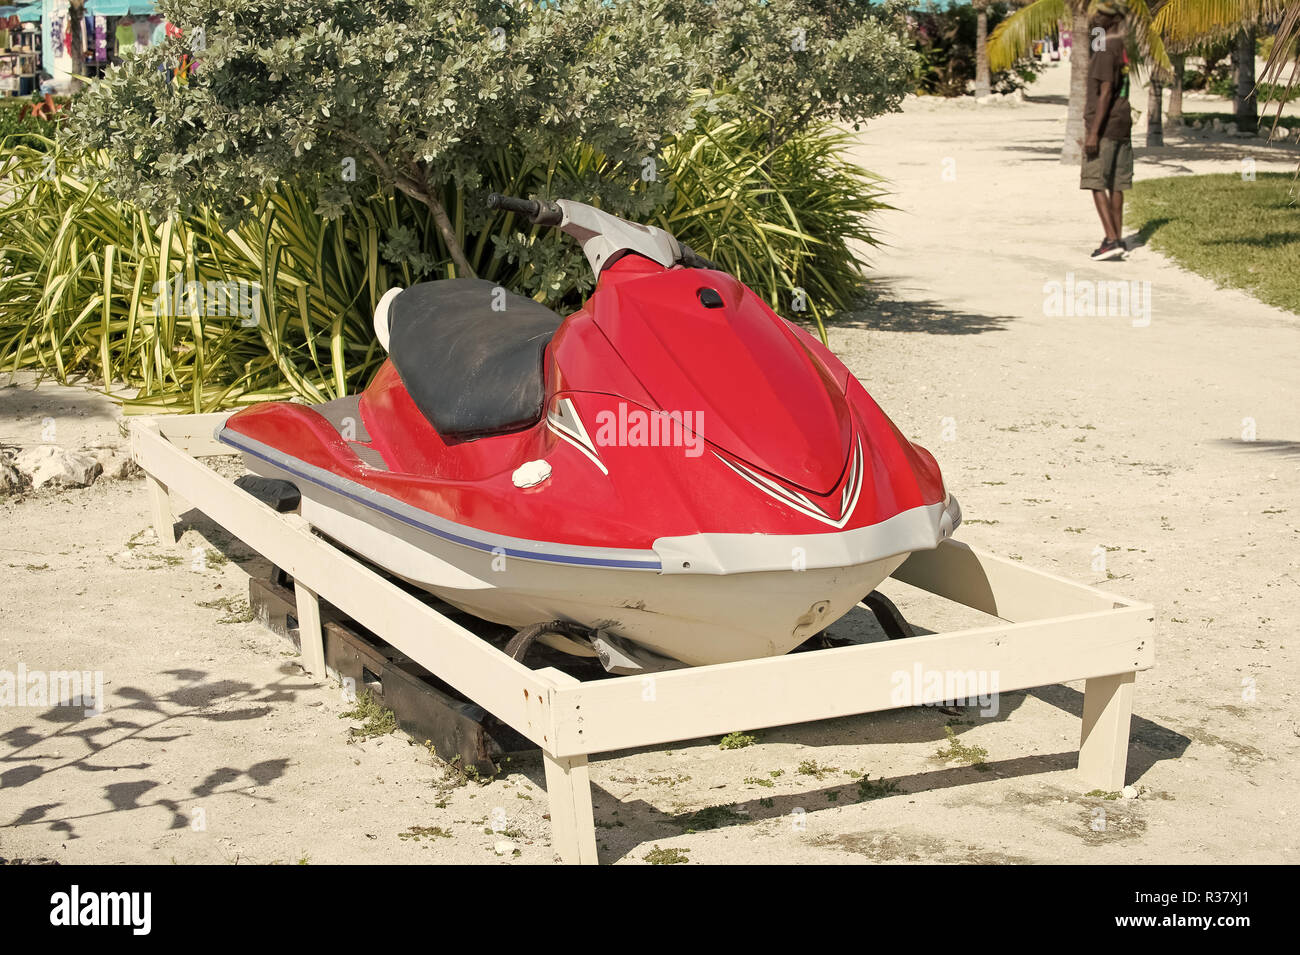 Wasserfahrzeuge, Roller oder Jet ski Boot, rote Farbe Schiff, auf dem Boden an einem sonnigen Tag auf die natürlichen Hintergrund geparkt. Sommer Urlaub. Erholung und Sport. Aktiven Lebensstil Stockfoto